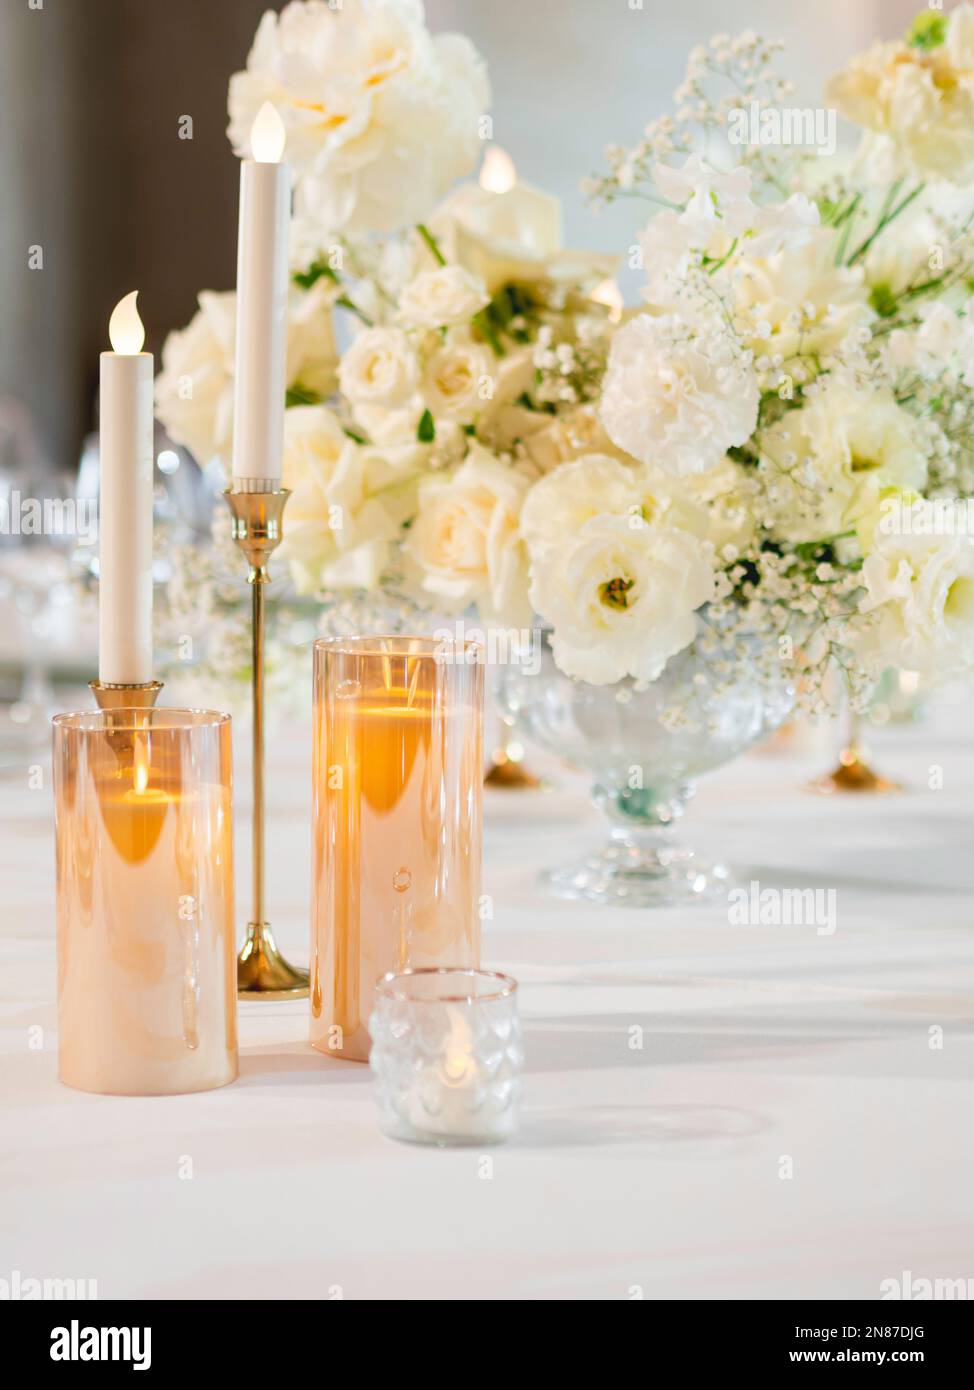 Tisch für Bankett serviert. Elektrische und echte Kerzen in glänzenden Kerzenhaltern als Dekoration. Tisch mit weißer Tischdecke und floraler Zusammensetzung. Ein Blumenstrauß Stockfoto